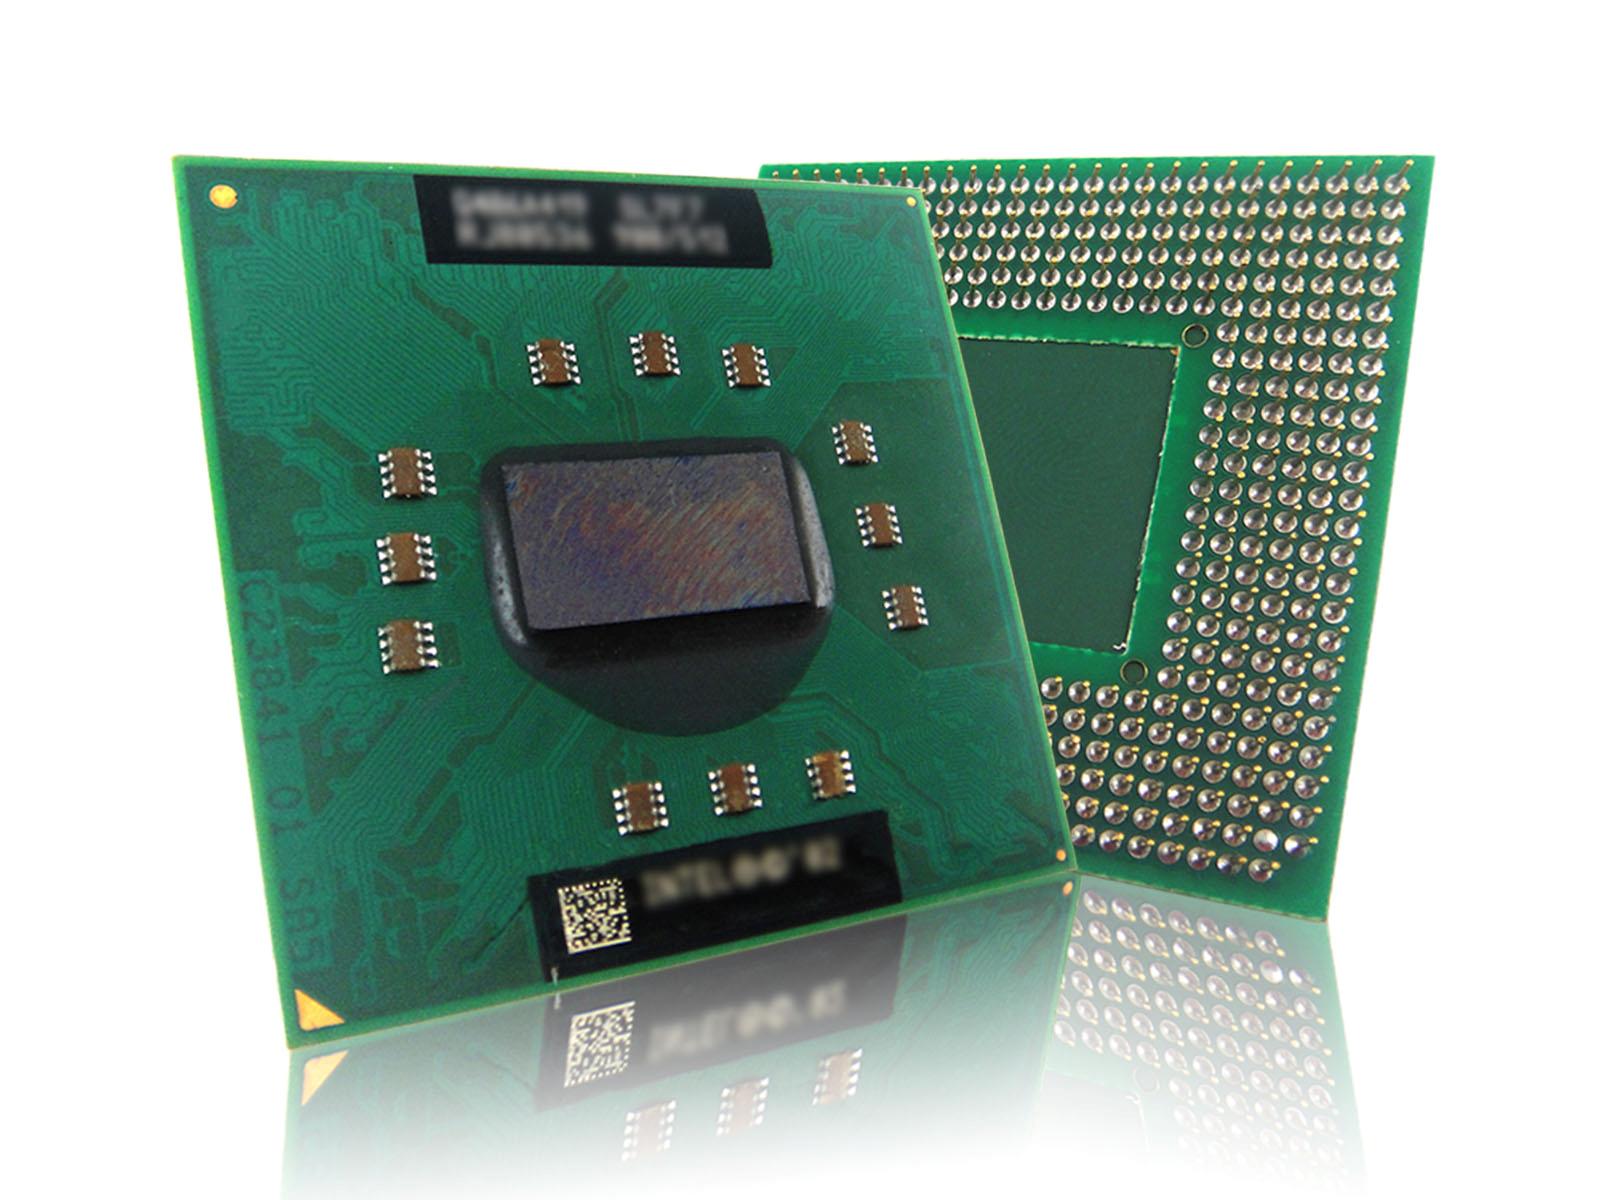 Pentium M 1.4G